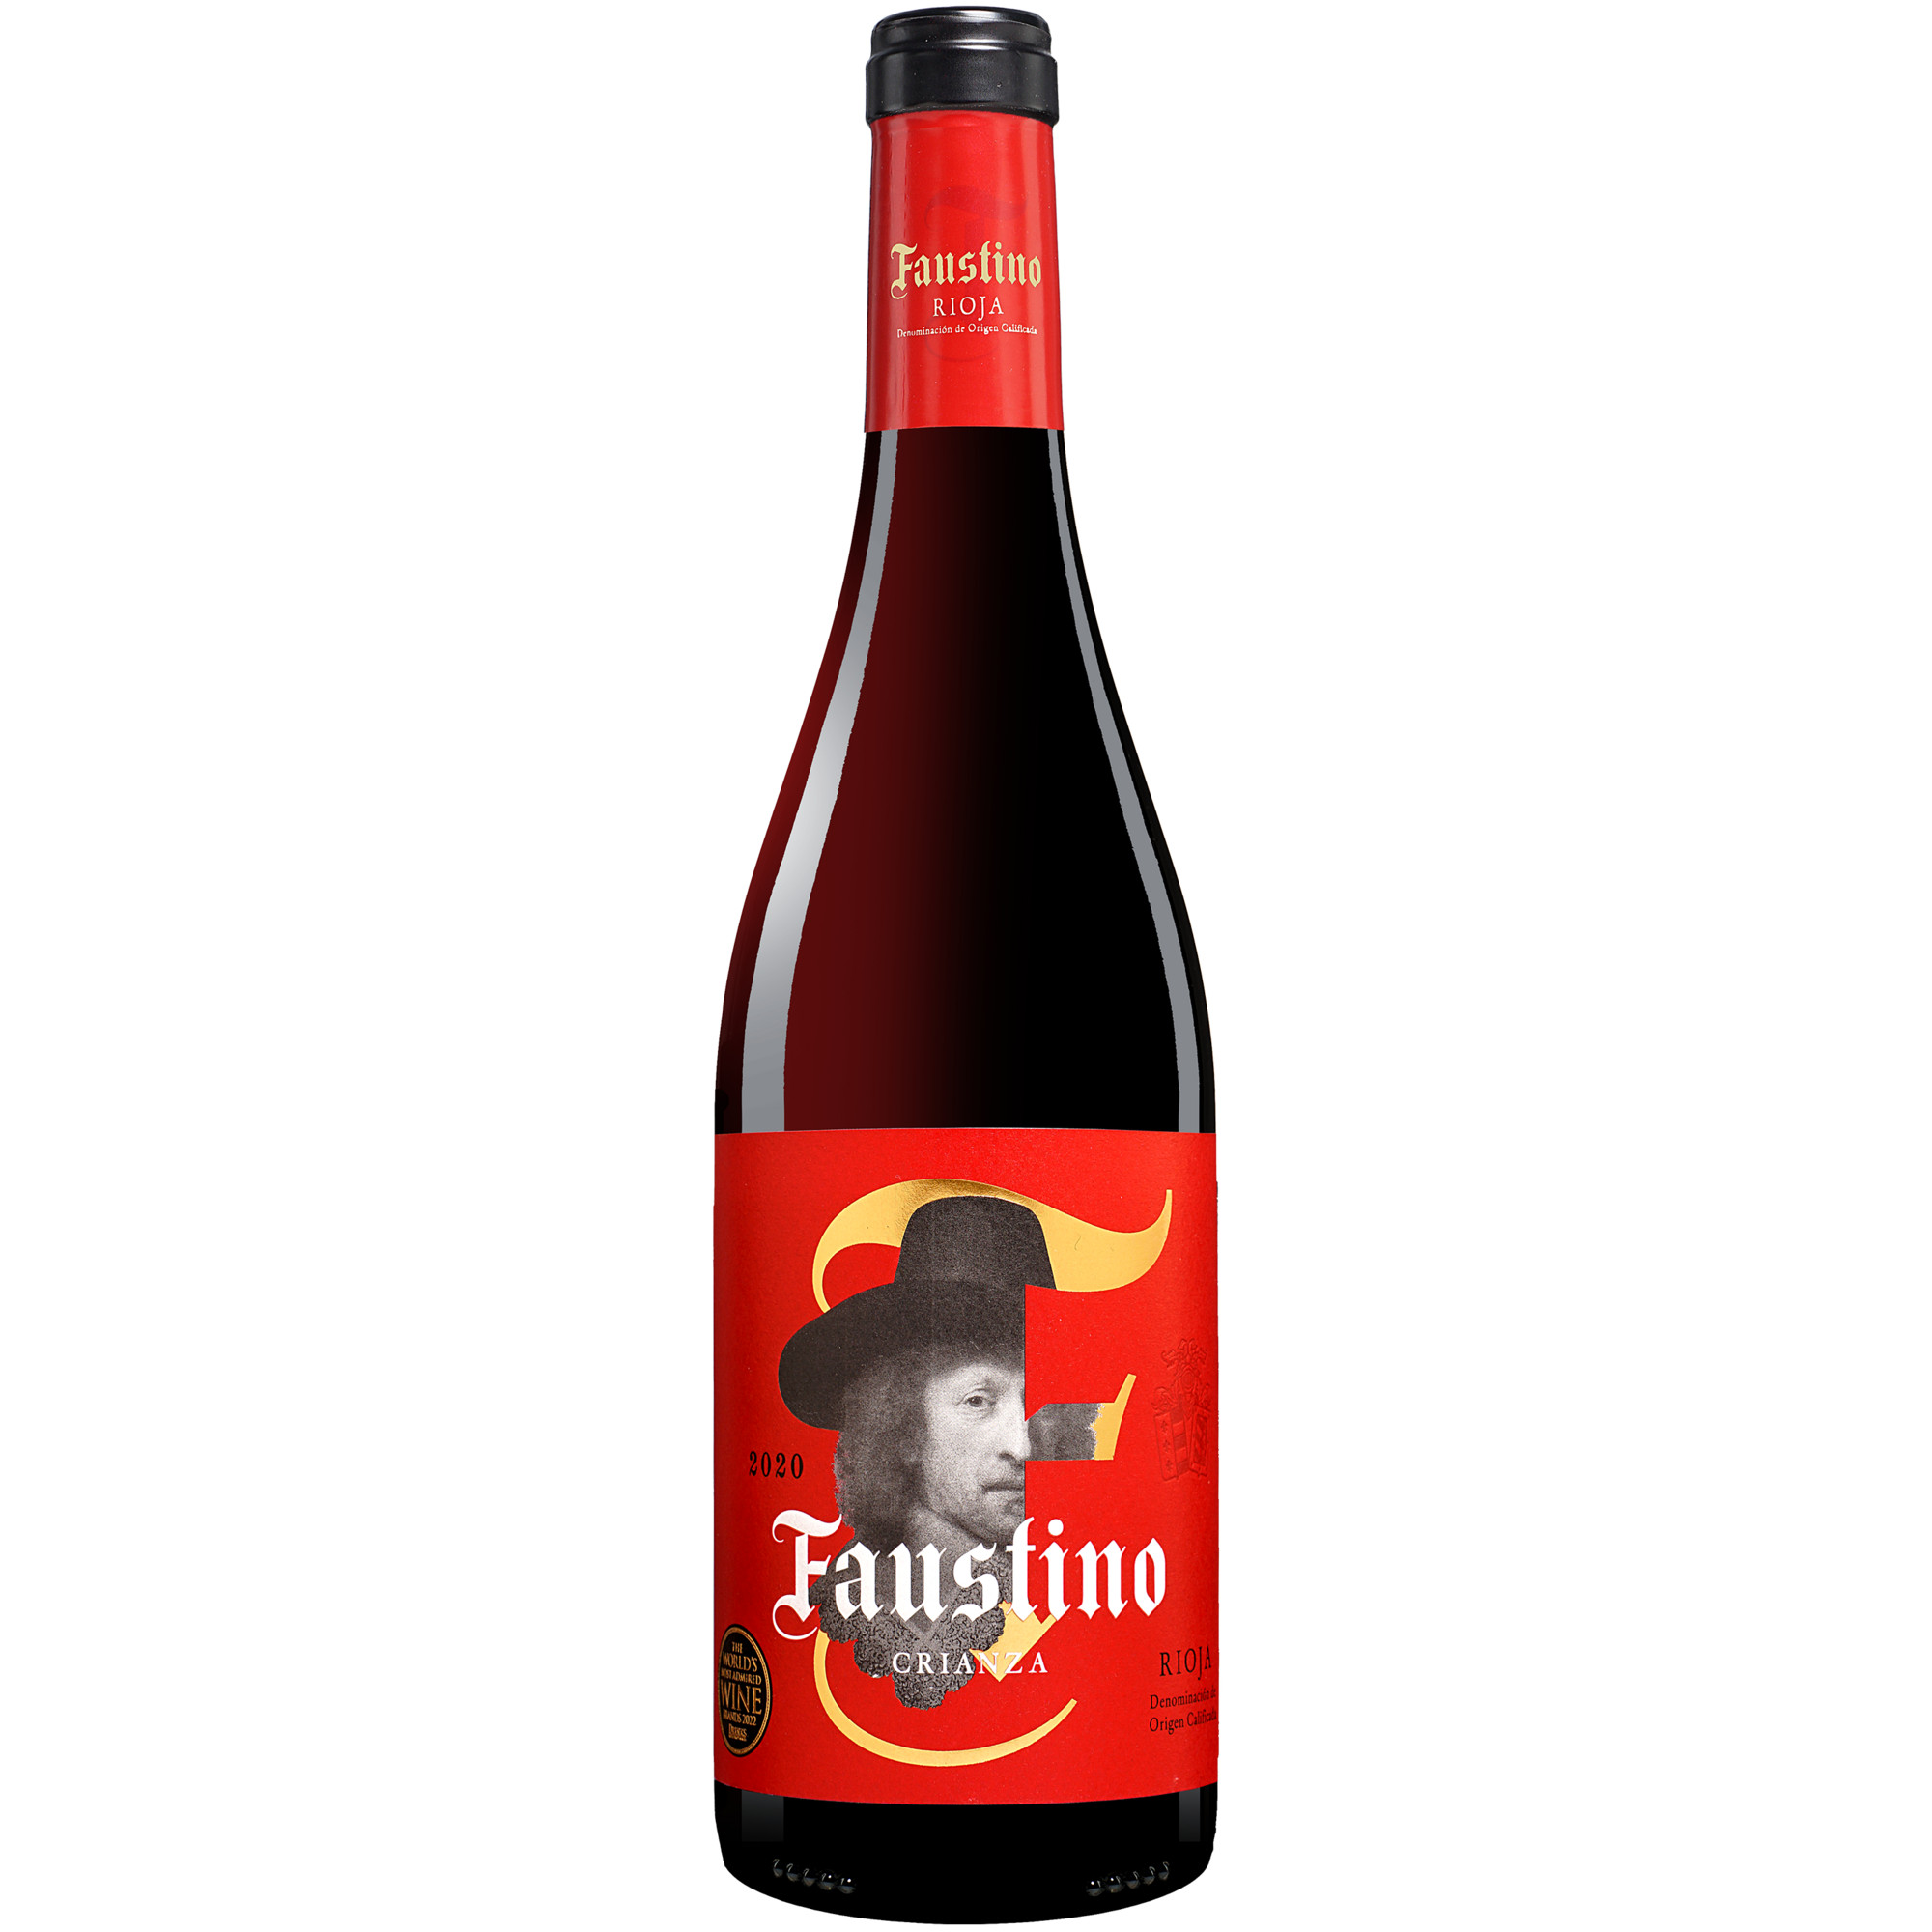 Faustino Tinto Crianza 2020  013.5% Vol. Rotwein Trocken aus Spanien